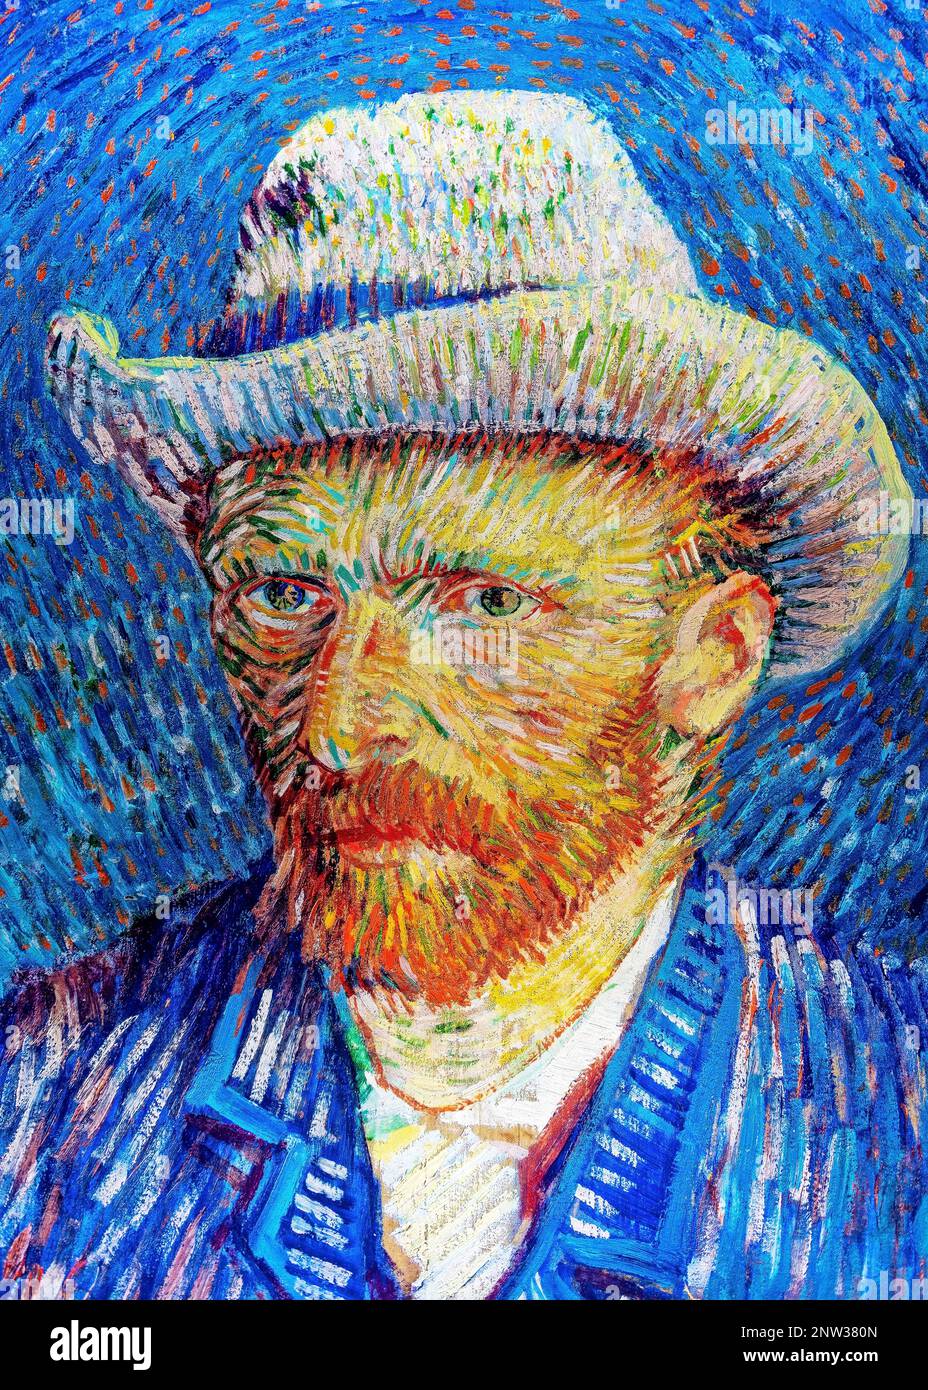 Vincent Van Gogh self portrait. Stock Photo